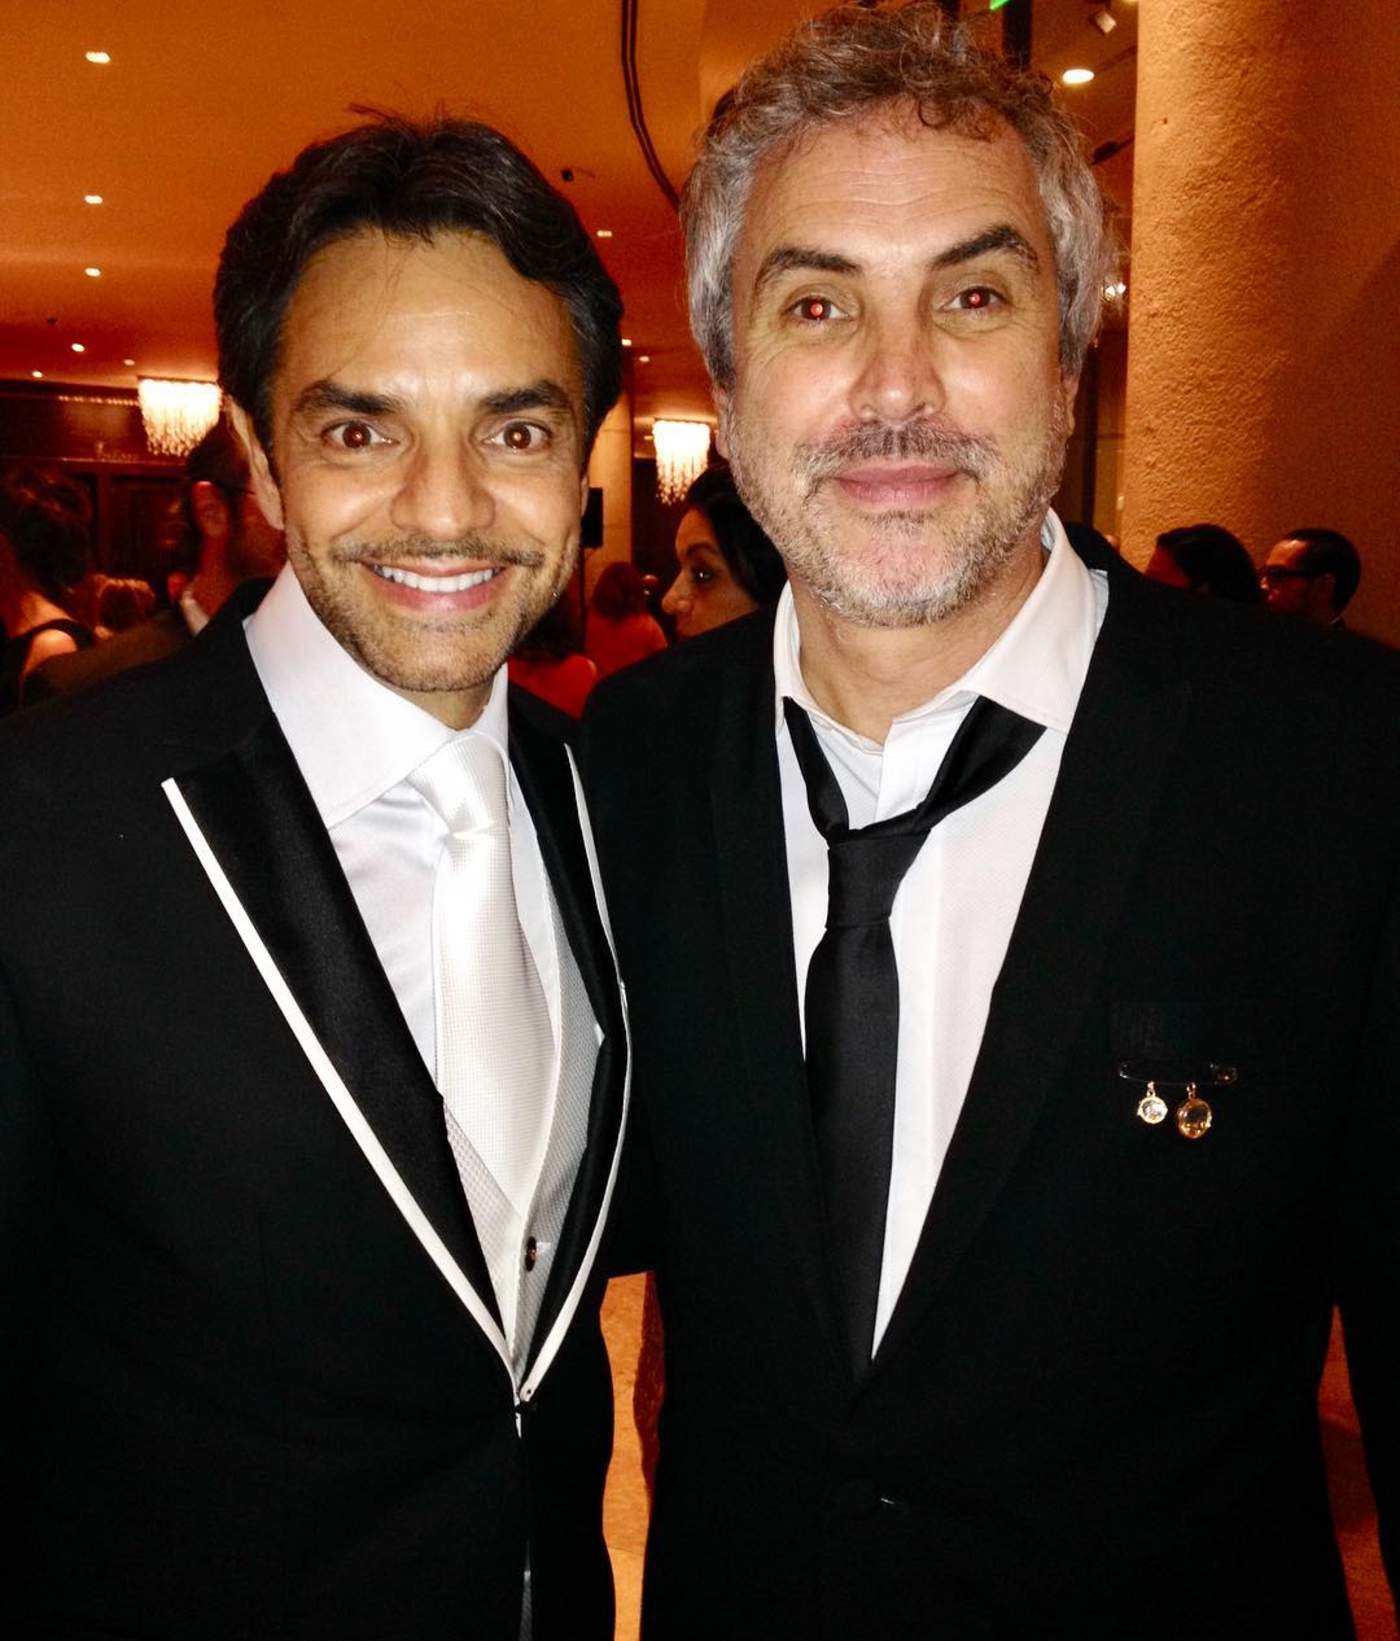 Para el recuerdo. Eugenio subió a su cuenta de Instagram una fotografía con el ganador del Oscar. (ESPECIAL)